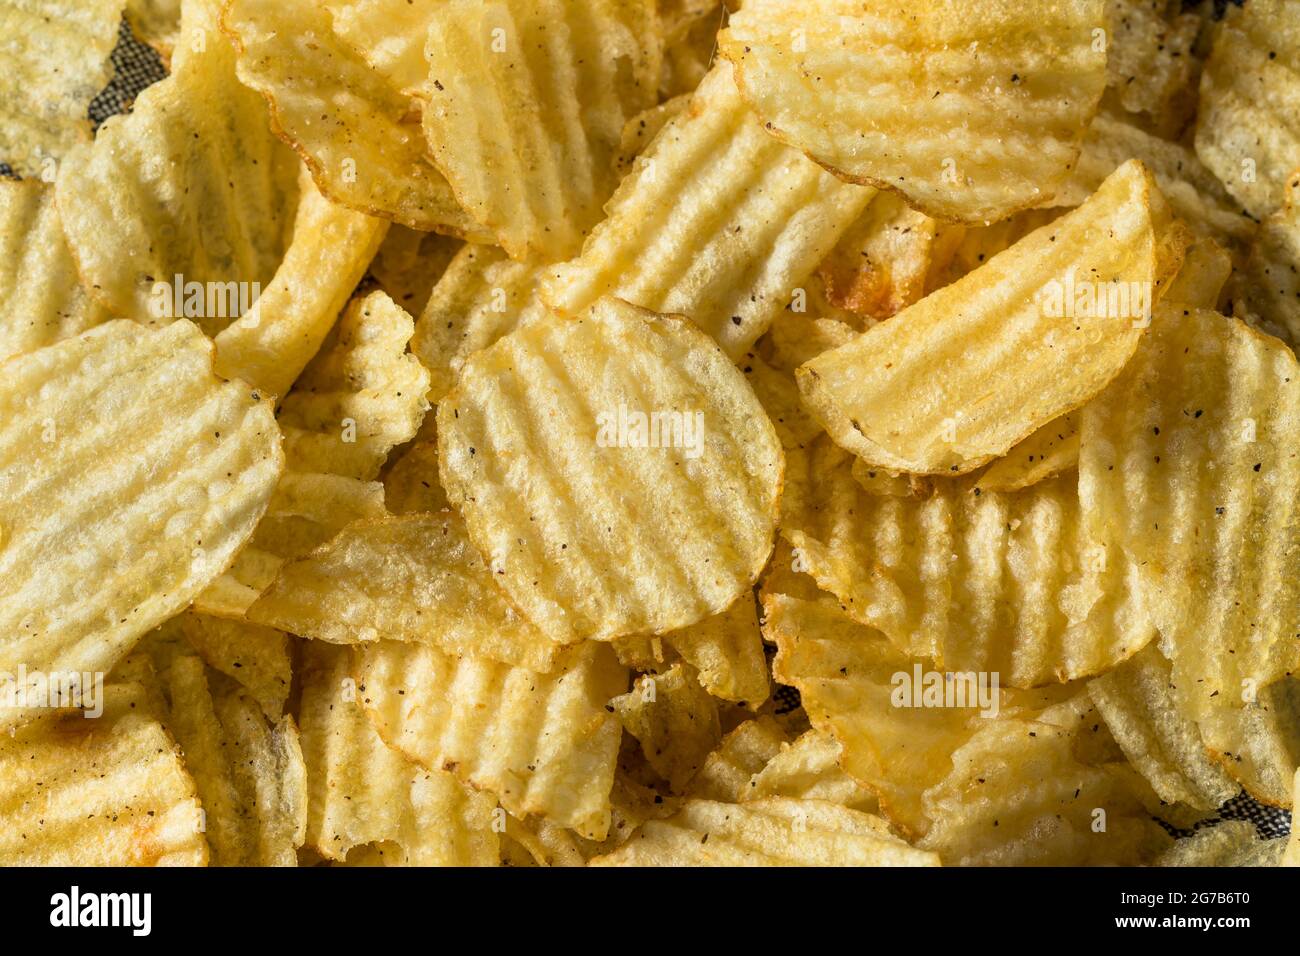 Fatty Ruffled Potato Chips Ready to Eat Stock Photo